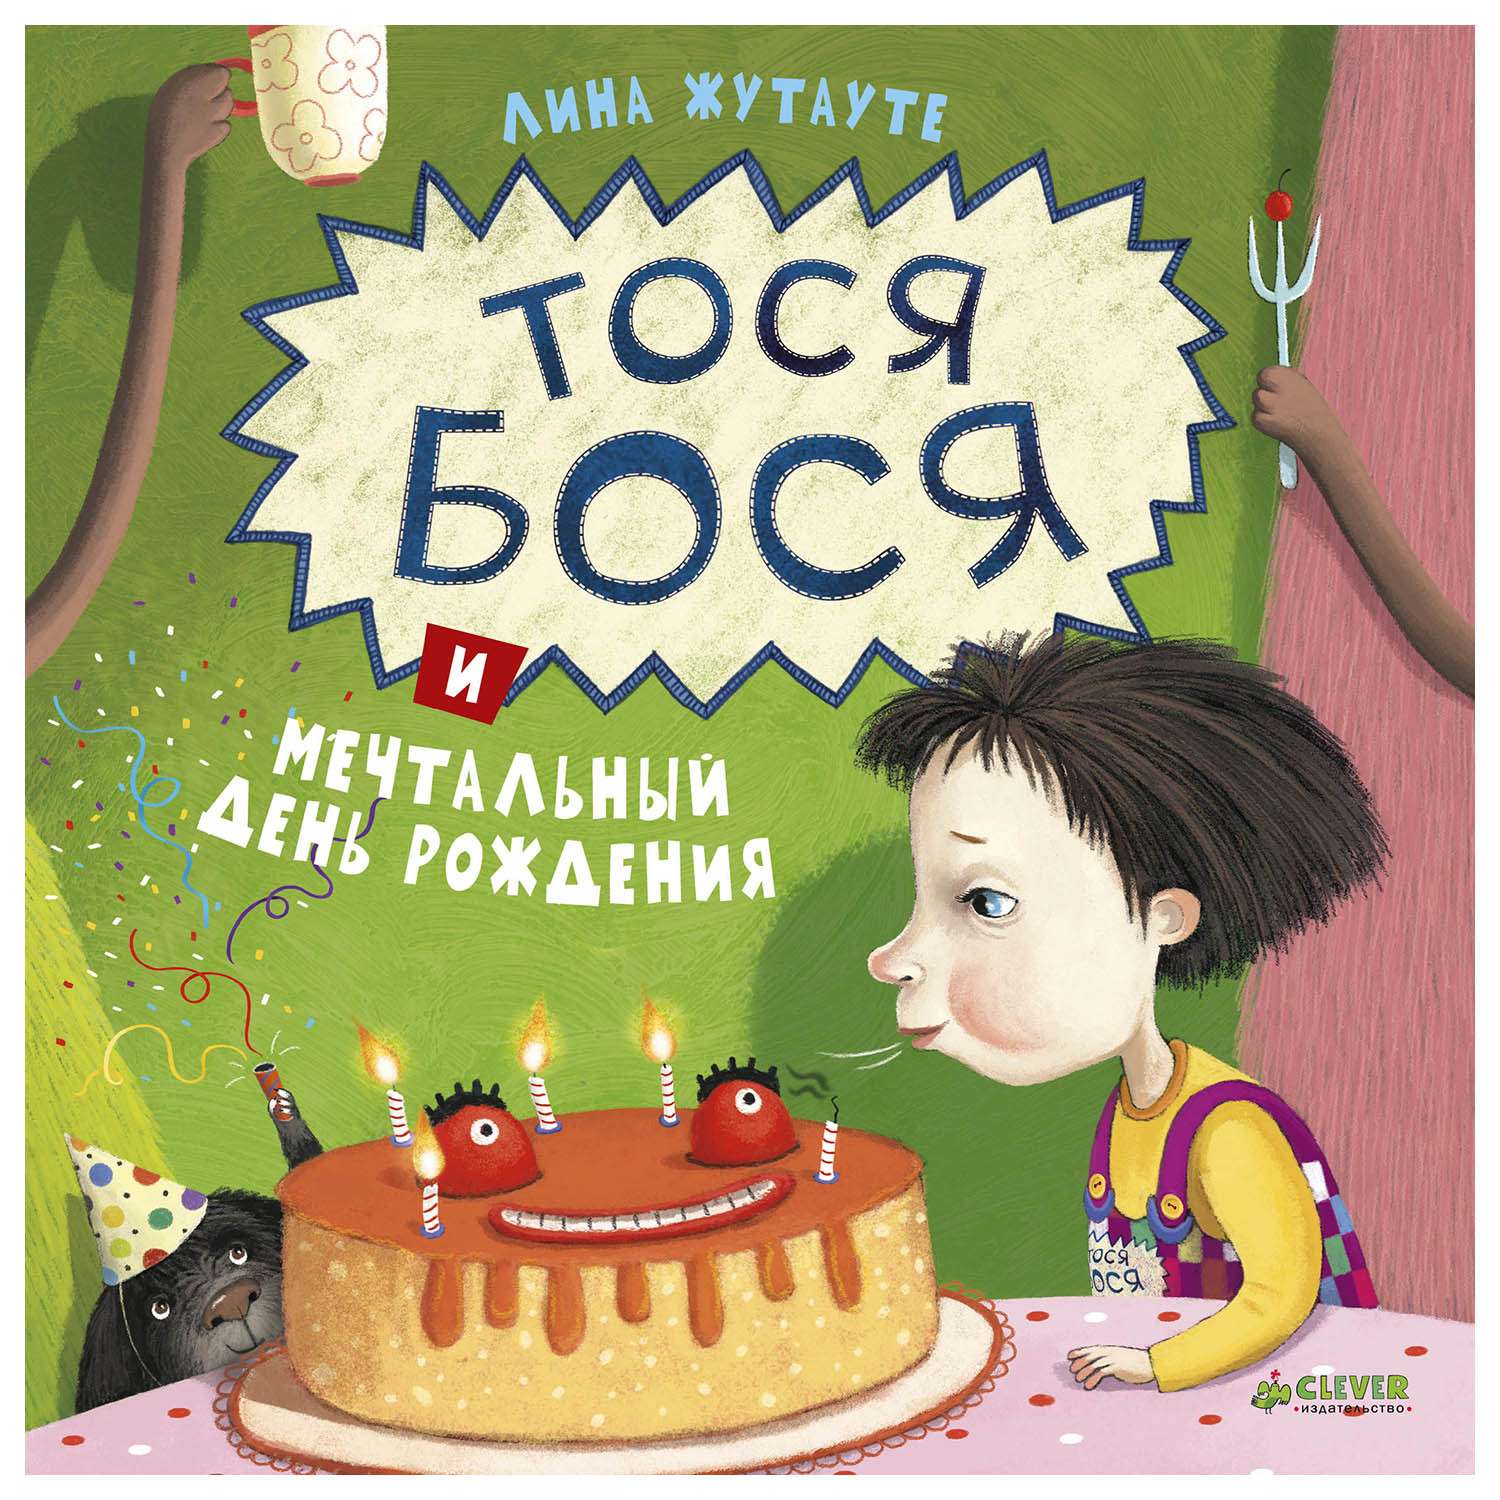 Книга Clever Тося Бося и мечтальный день рождения - фото 1